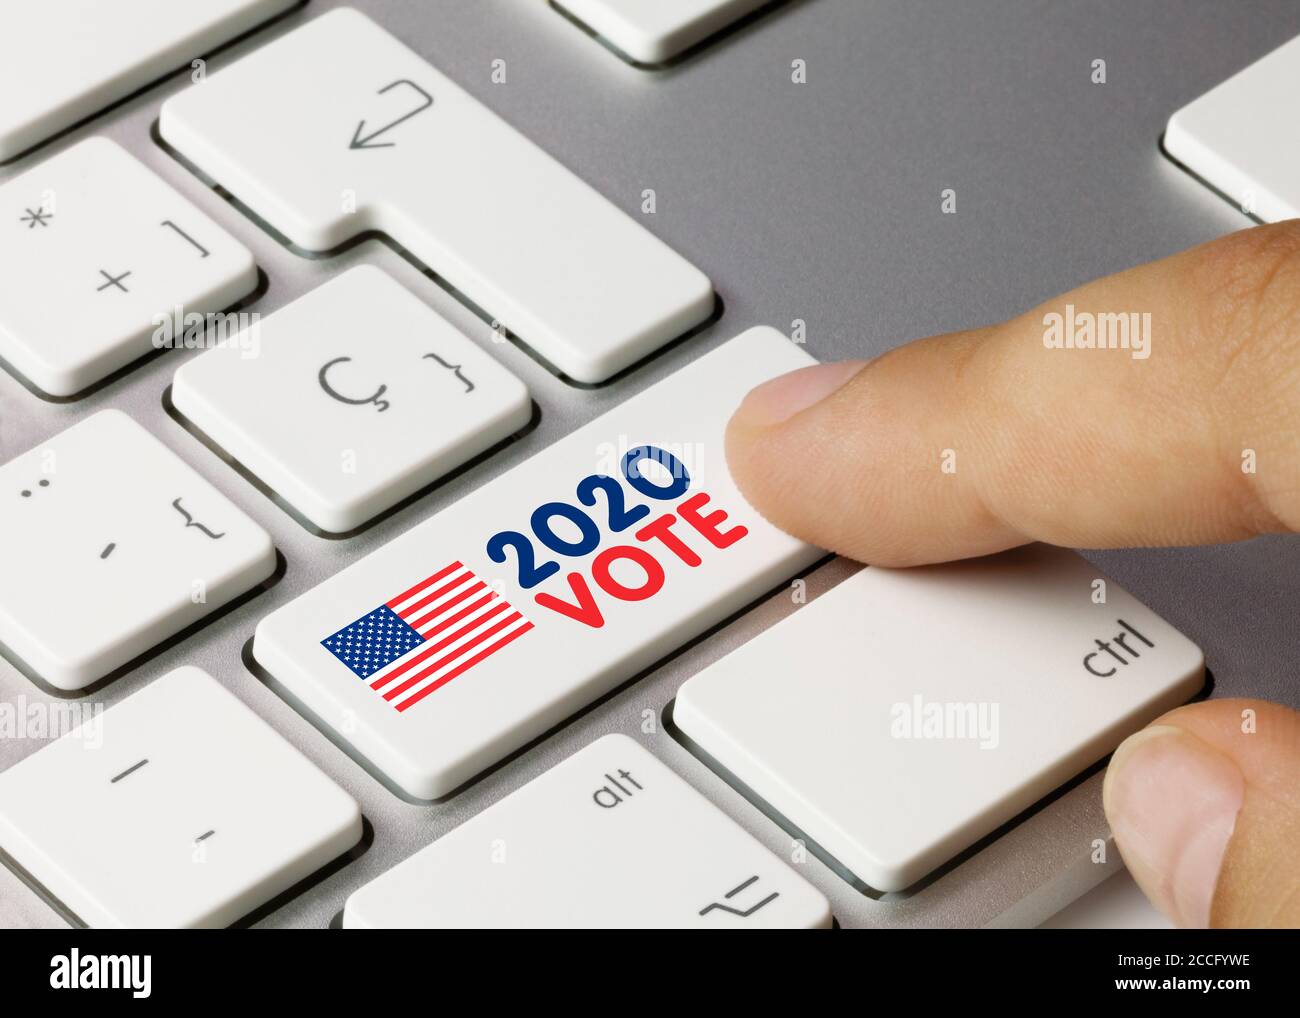 EEUU 2020 STIMME geschrieben auf White Key der metallischen Tastatur. Drücken Sie die Taste mit dem Finger. Stockfoto